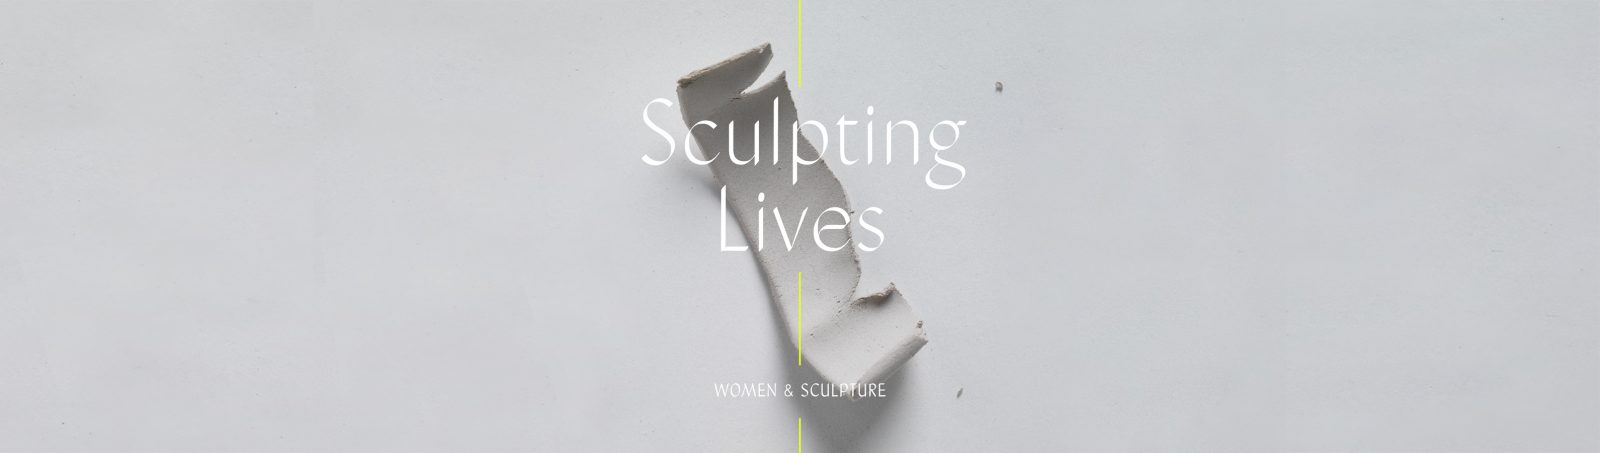 sculpting lives women